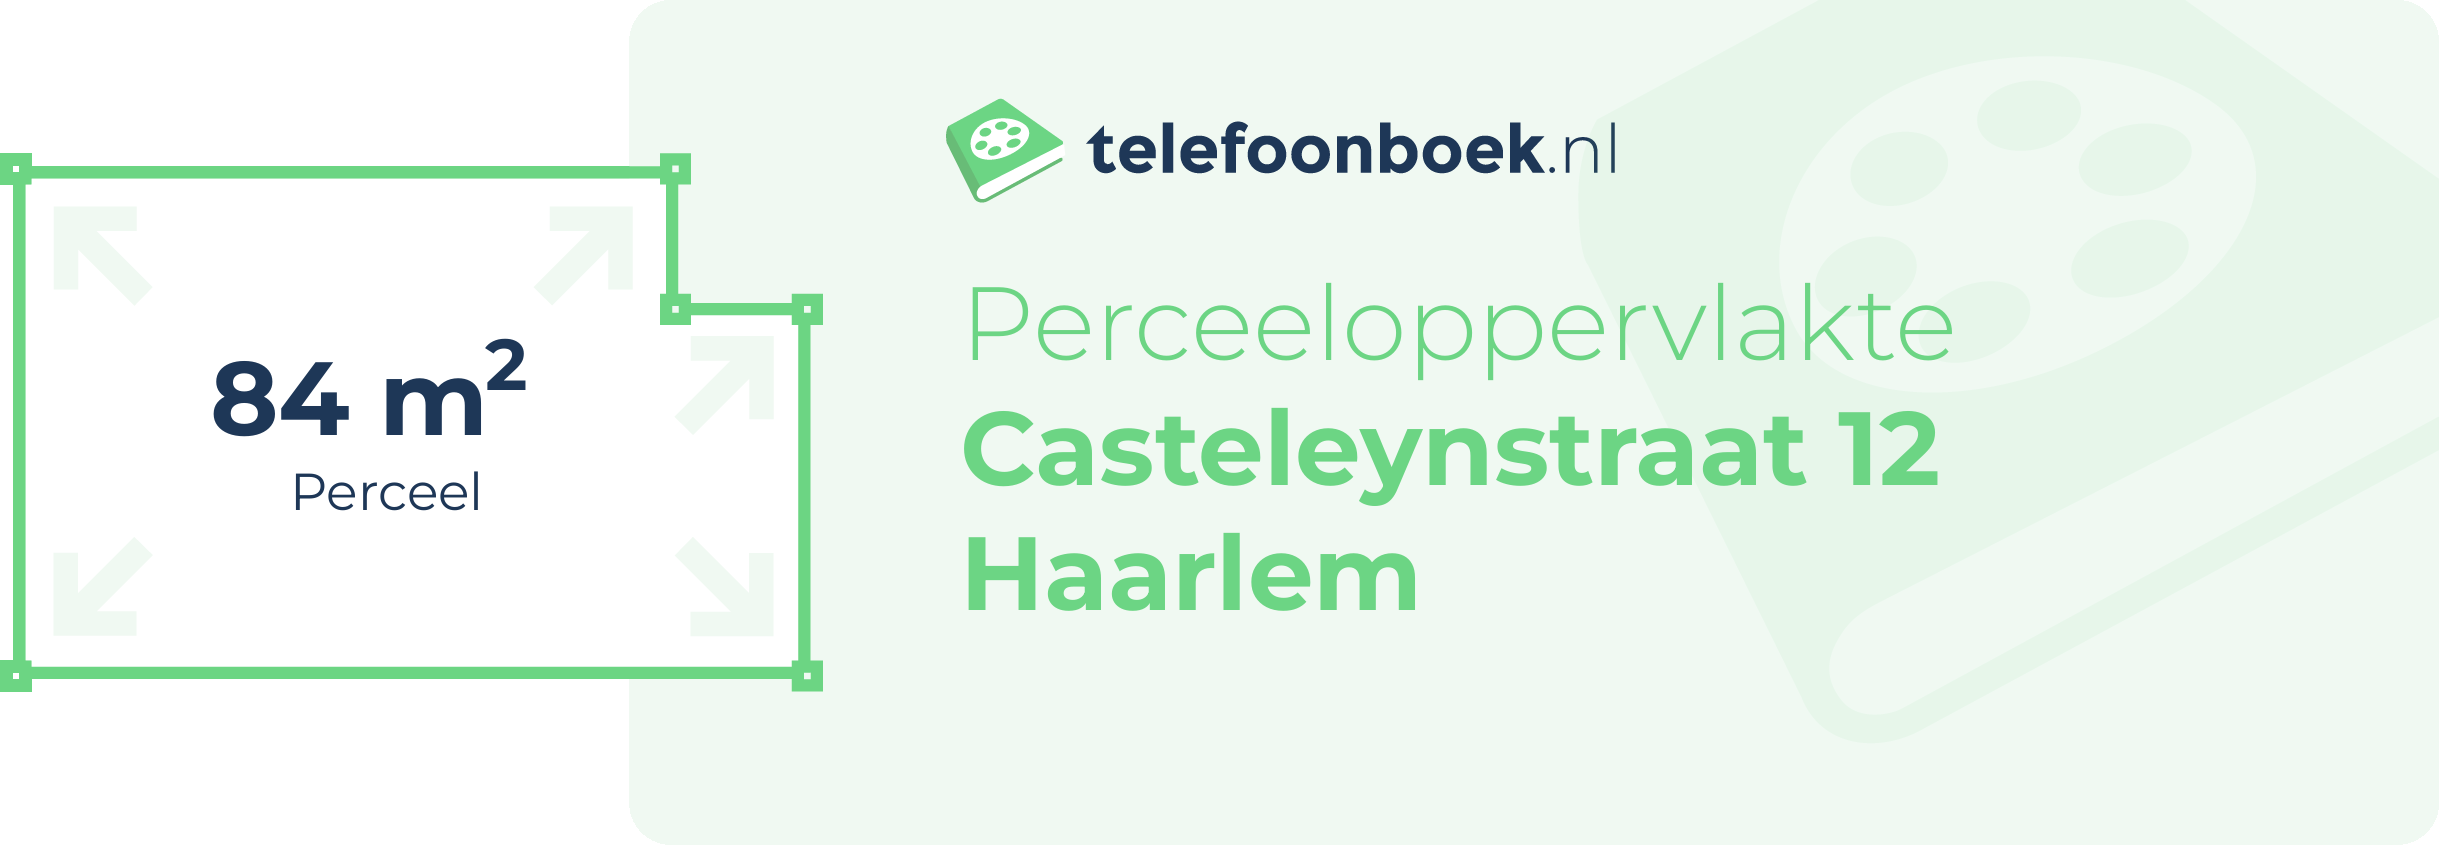 Perceeloppervlakte Casteleynstraat 12 Haarlem